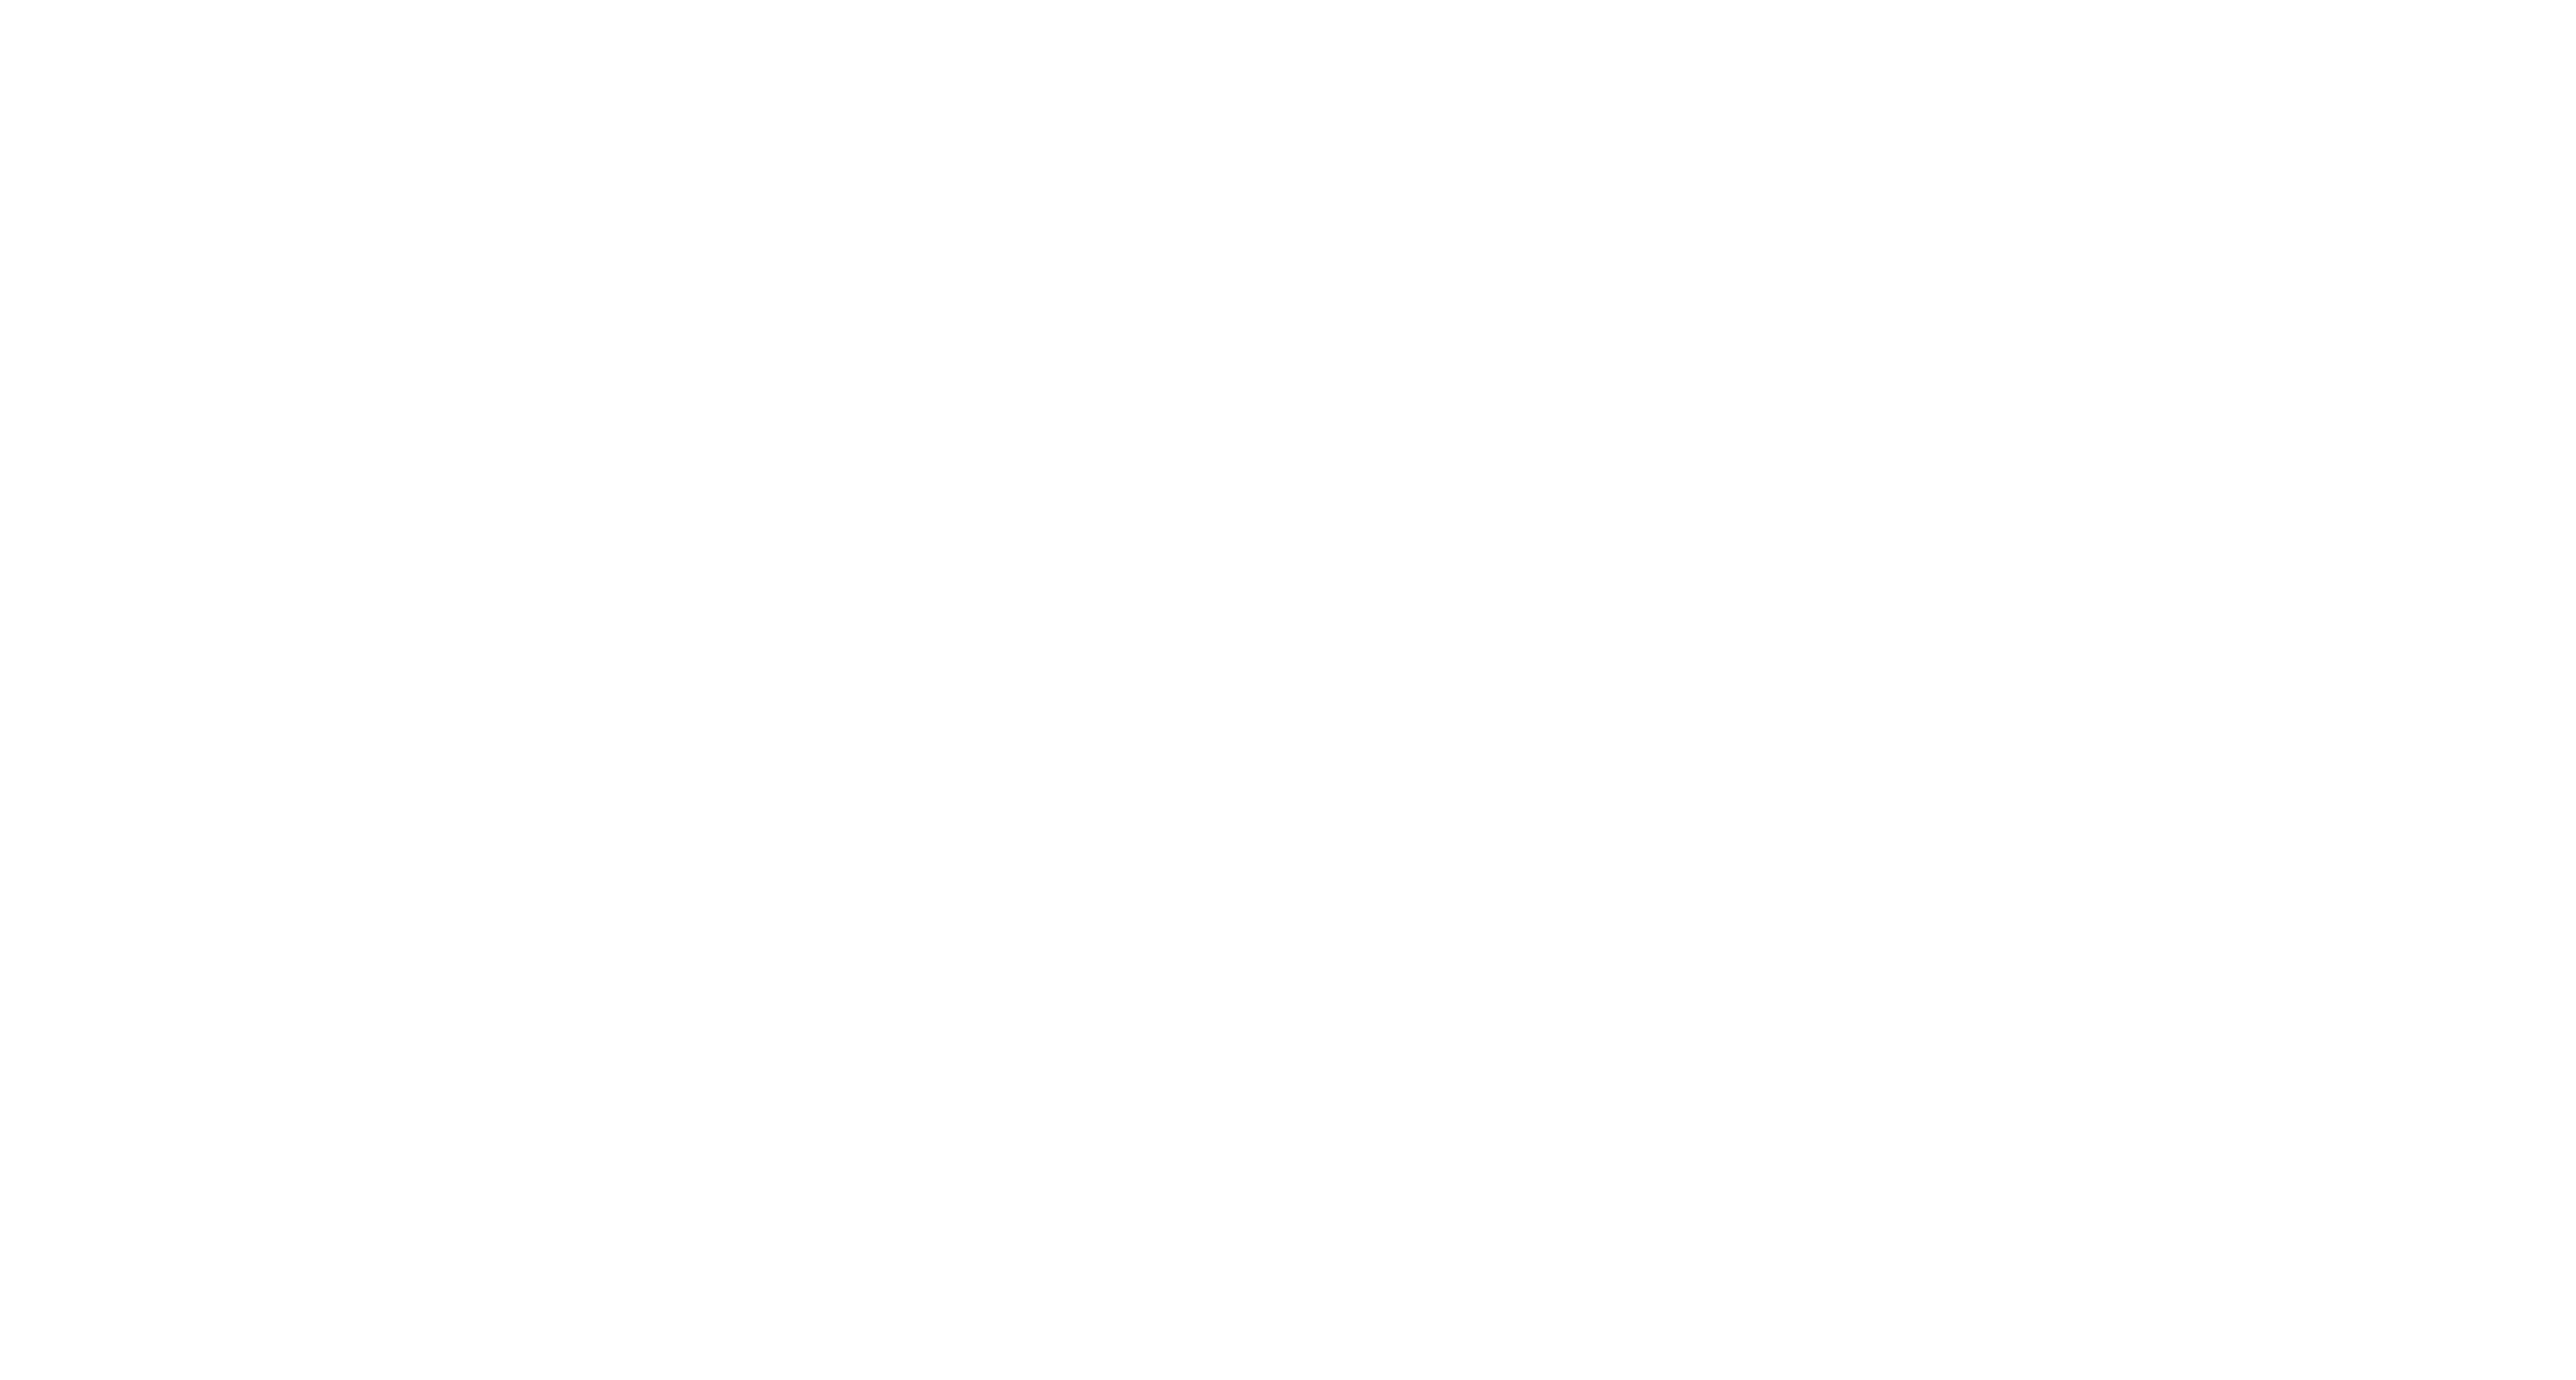 SAISON DE CHASSE 2023/2024 - Retrouvez toutes les infos pour